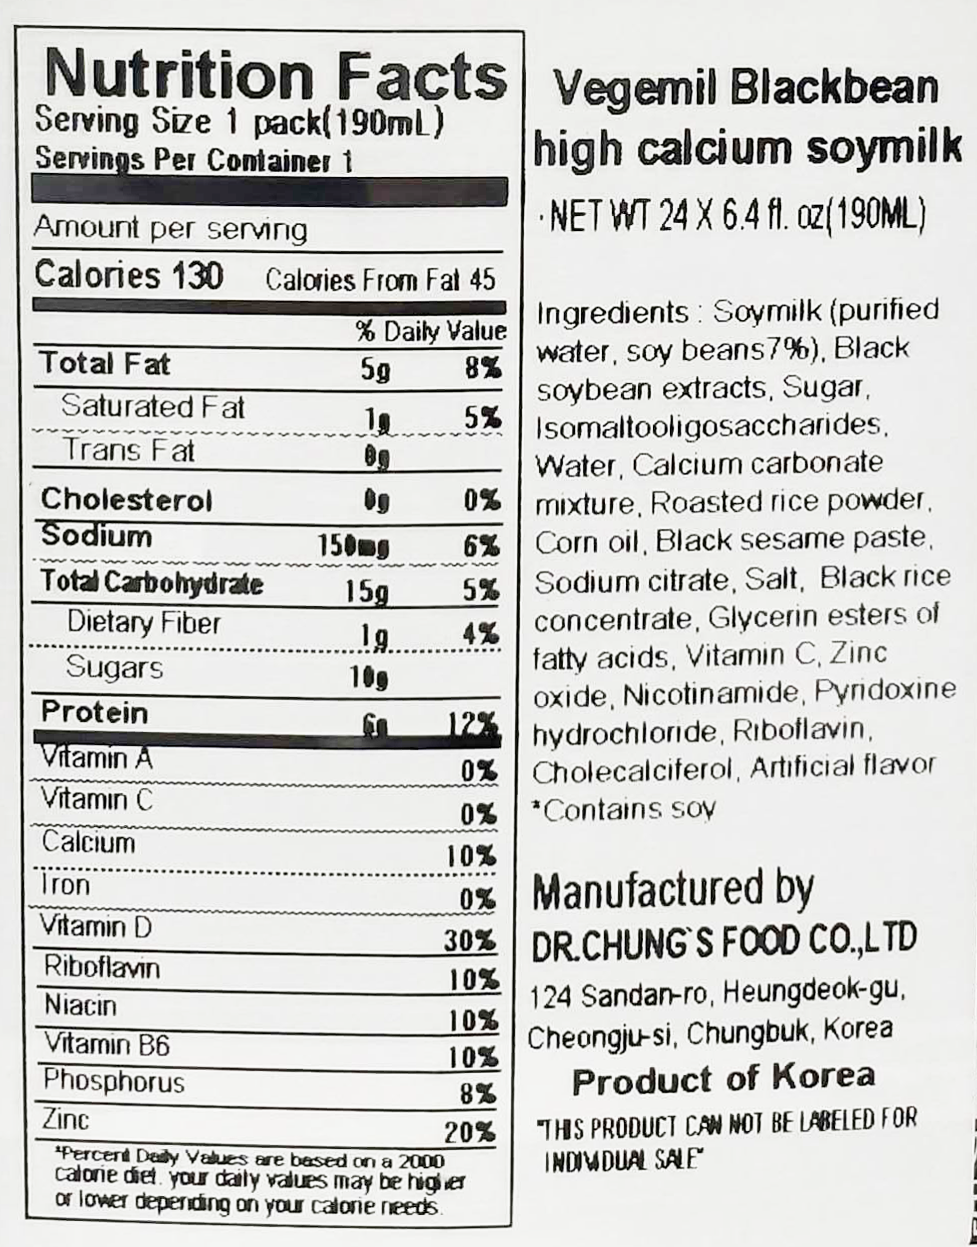 Vegemil Black Bean High Calcium Soymilk 6.43oz(190ml) 24 Packs